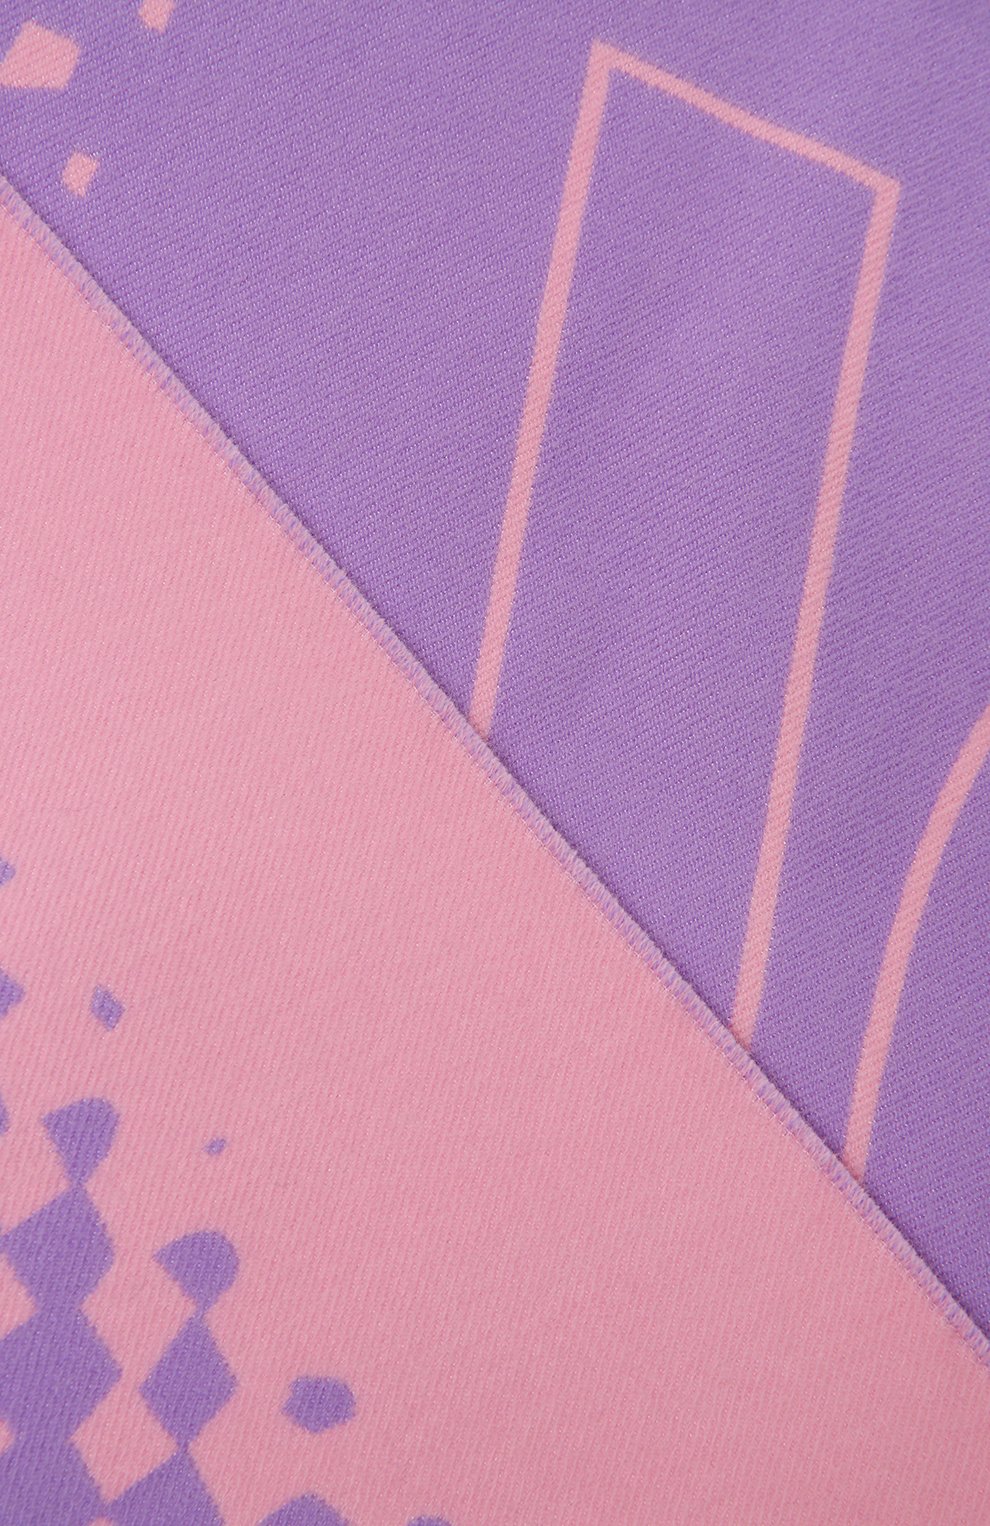 Женский шарф из шерсти и шелка BURBERRY розового цвета, арт. 8049688 | Фото 4 (Материал: Текстиль, Шерсть)